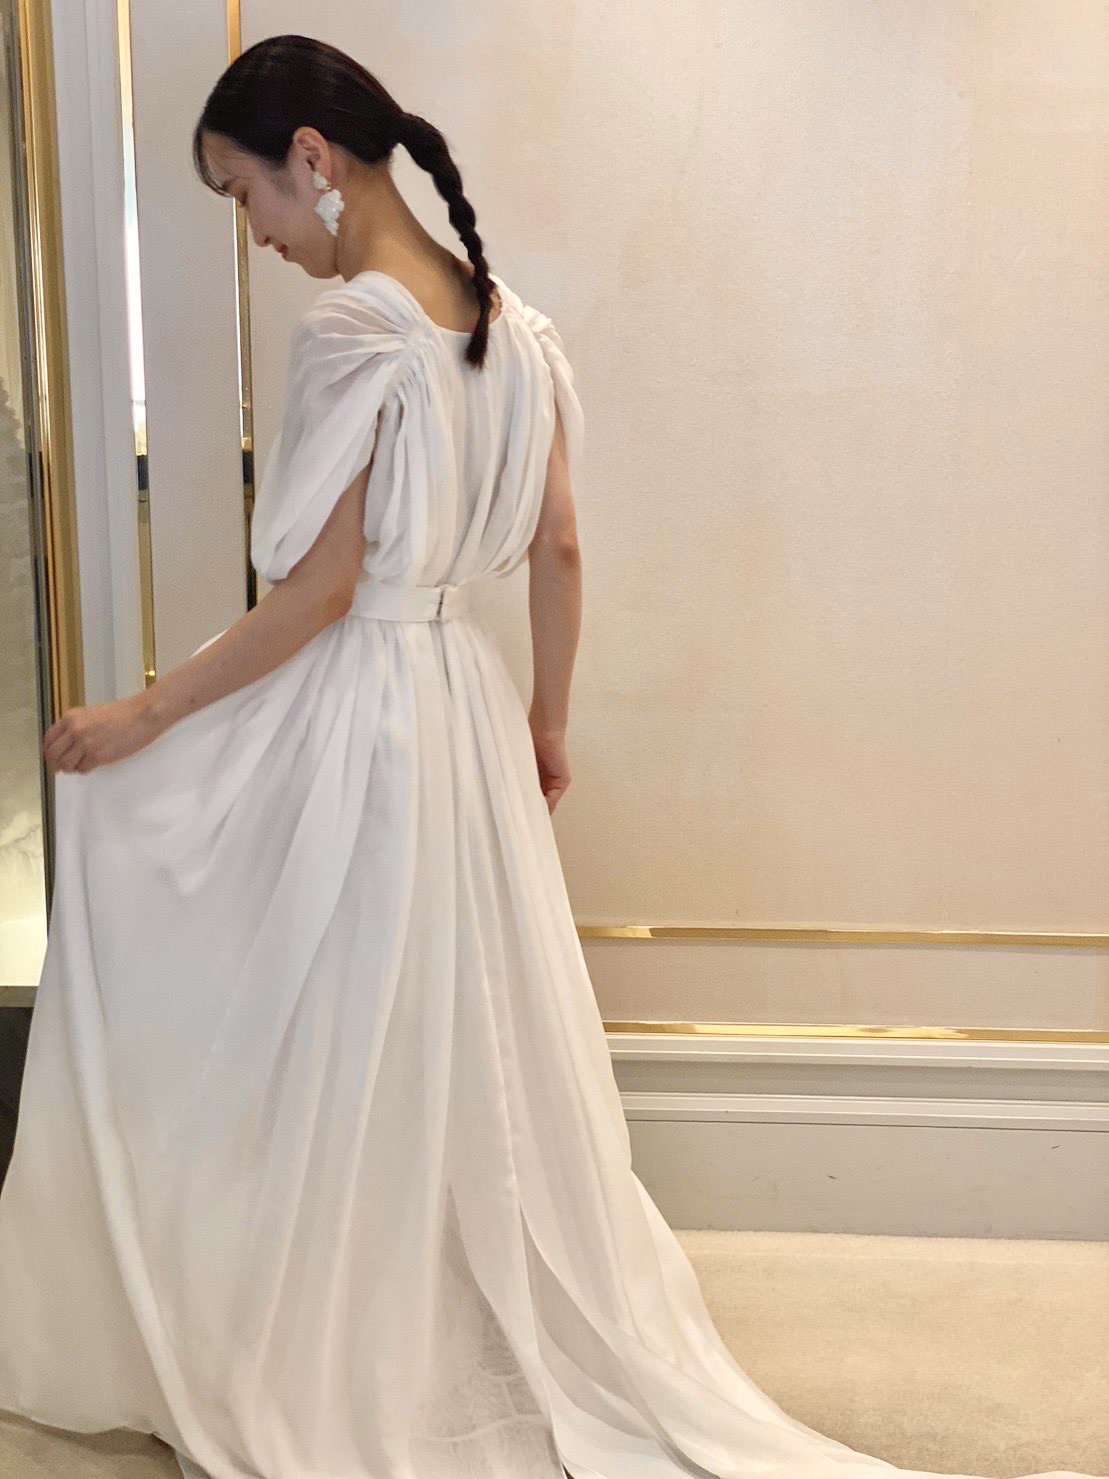 ザ トリート ドレッシング大阪店よりご紹介するシンプルなウェディングドレスと白いフラワーモチーフのイヤリングのコーディネート